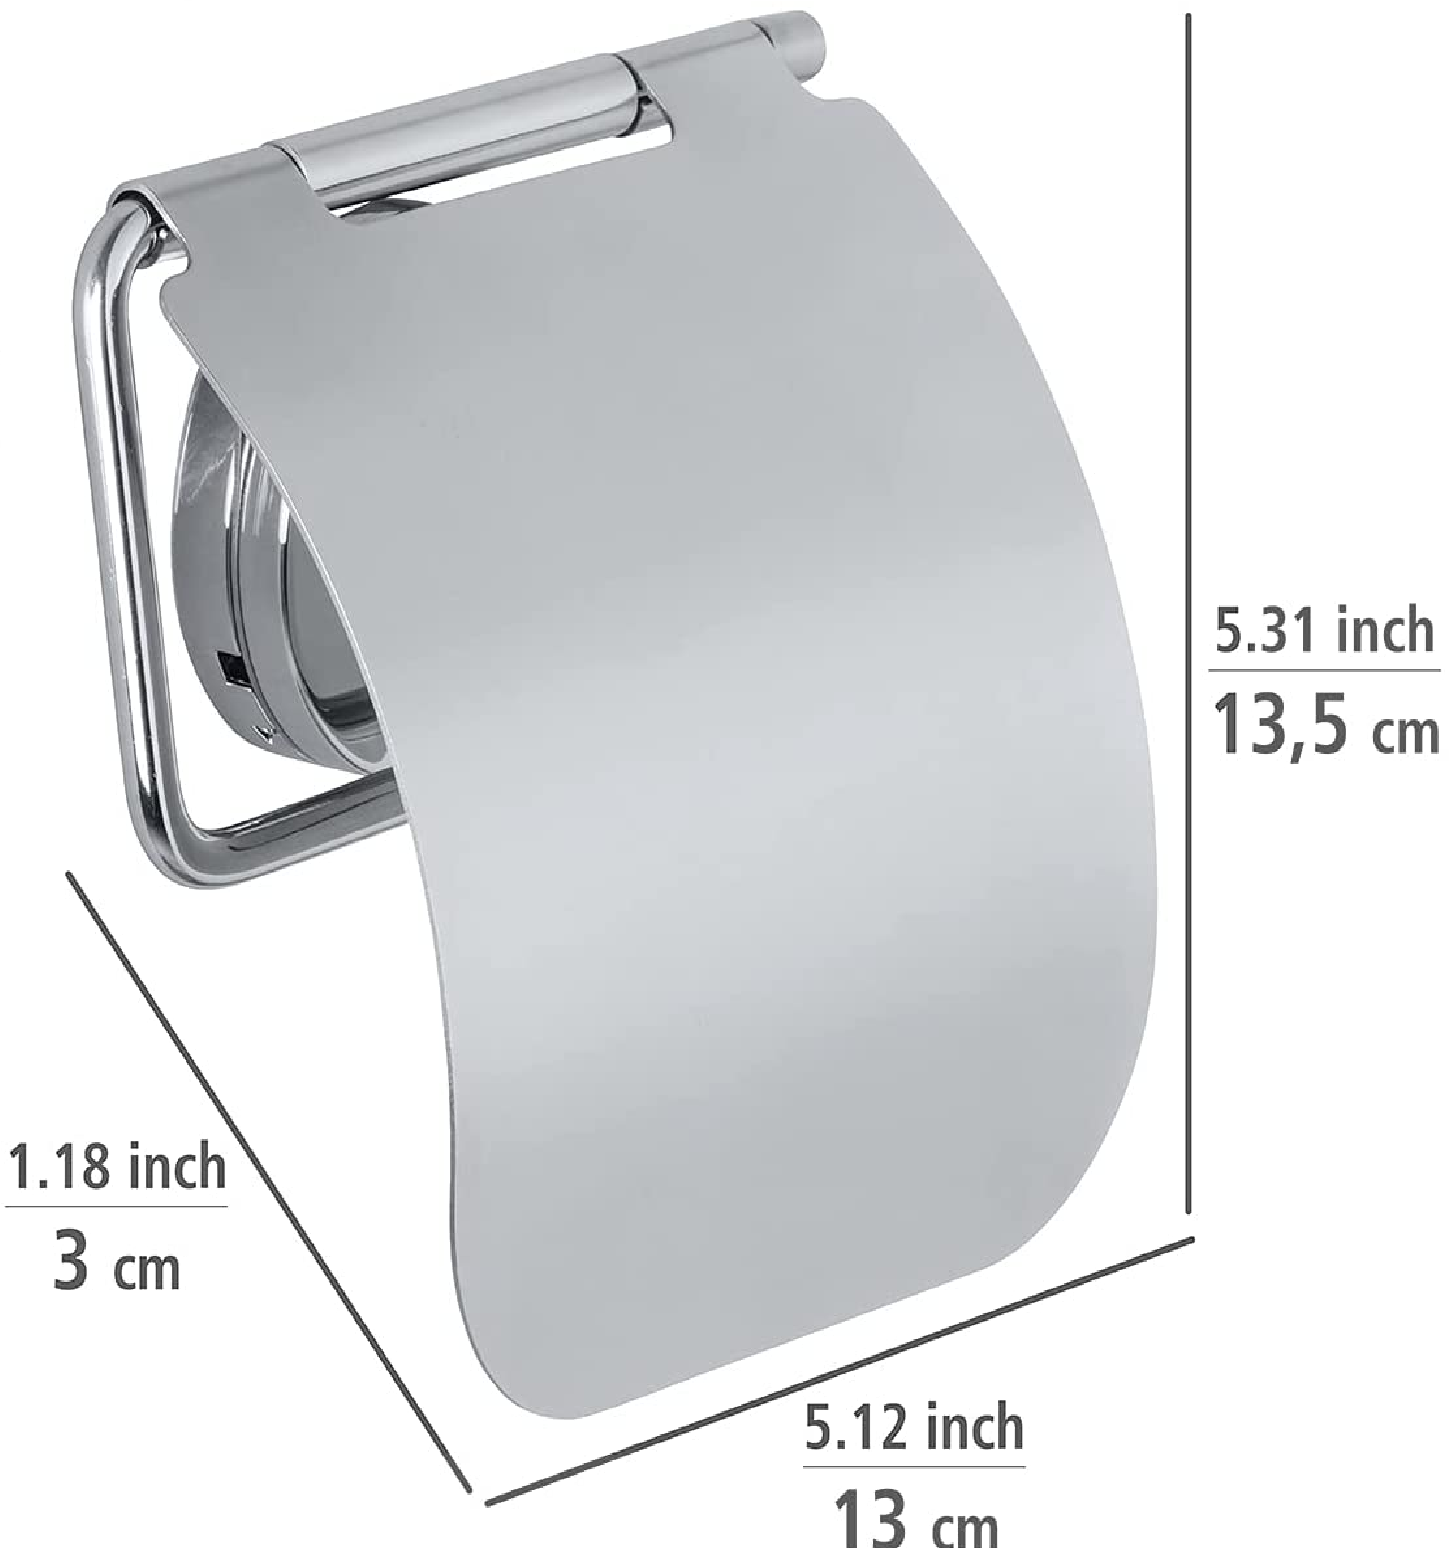 Toilettenpapierhalter mit Deckel Osimo, WC-Rollenhalter, Befestigen ohne bohren, sicherer Halt durch statische Haftung auf glatten, luftundurchlässigen Flächen, 13 x 13,5 x 3 cm